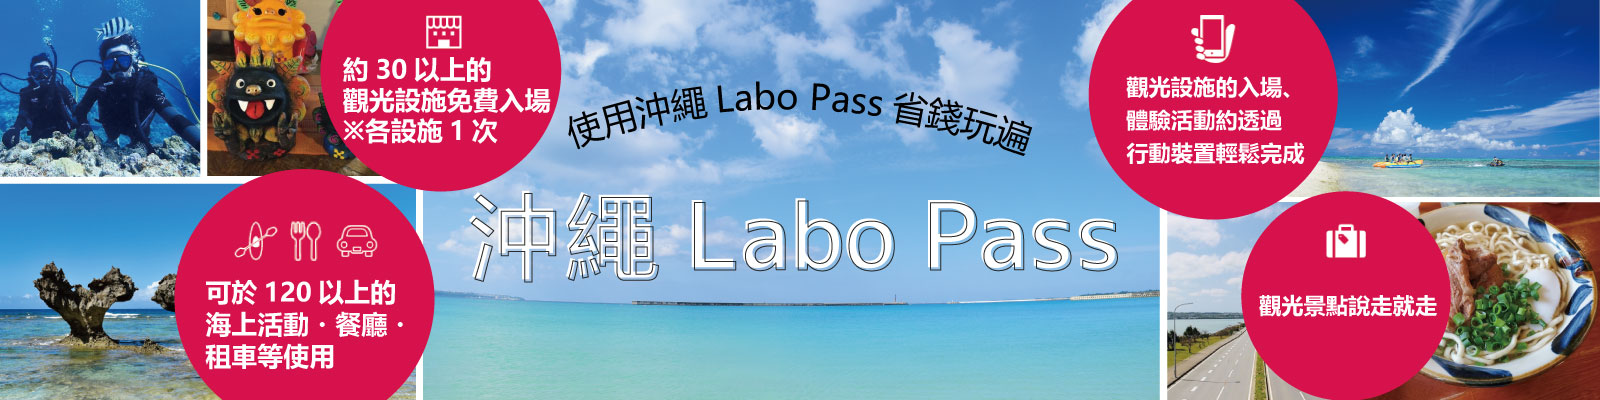 沖繩Labo Pass(沖縄ラボPass)